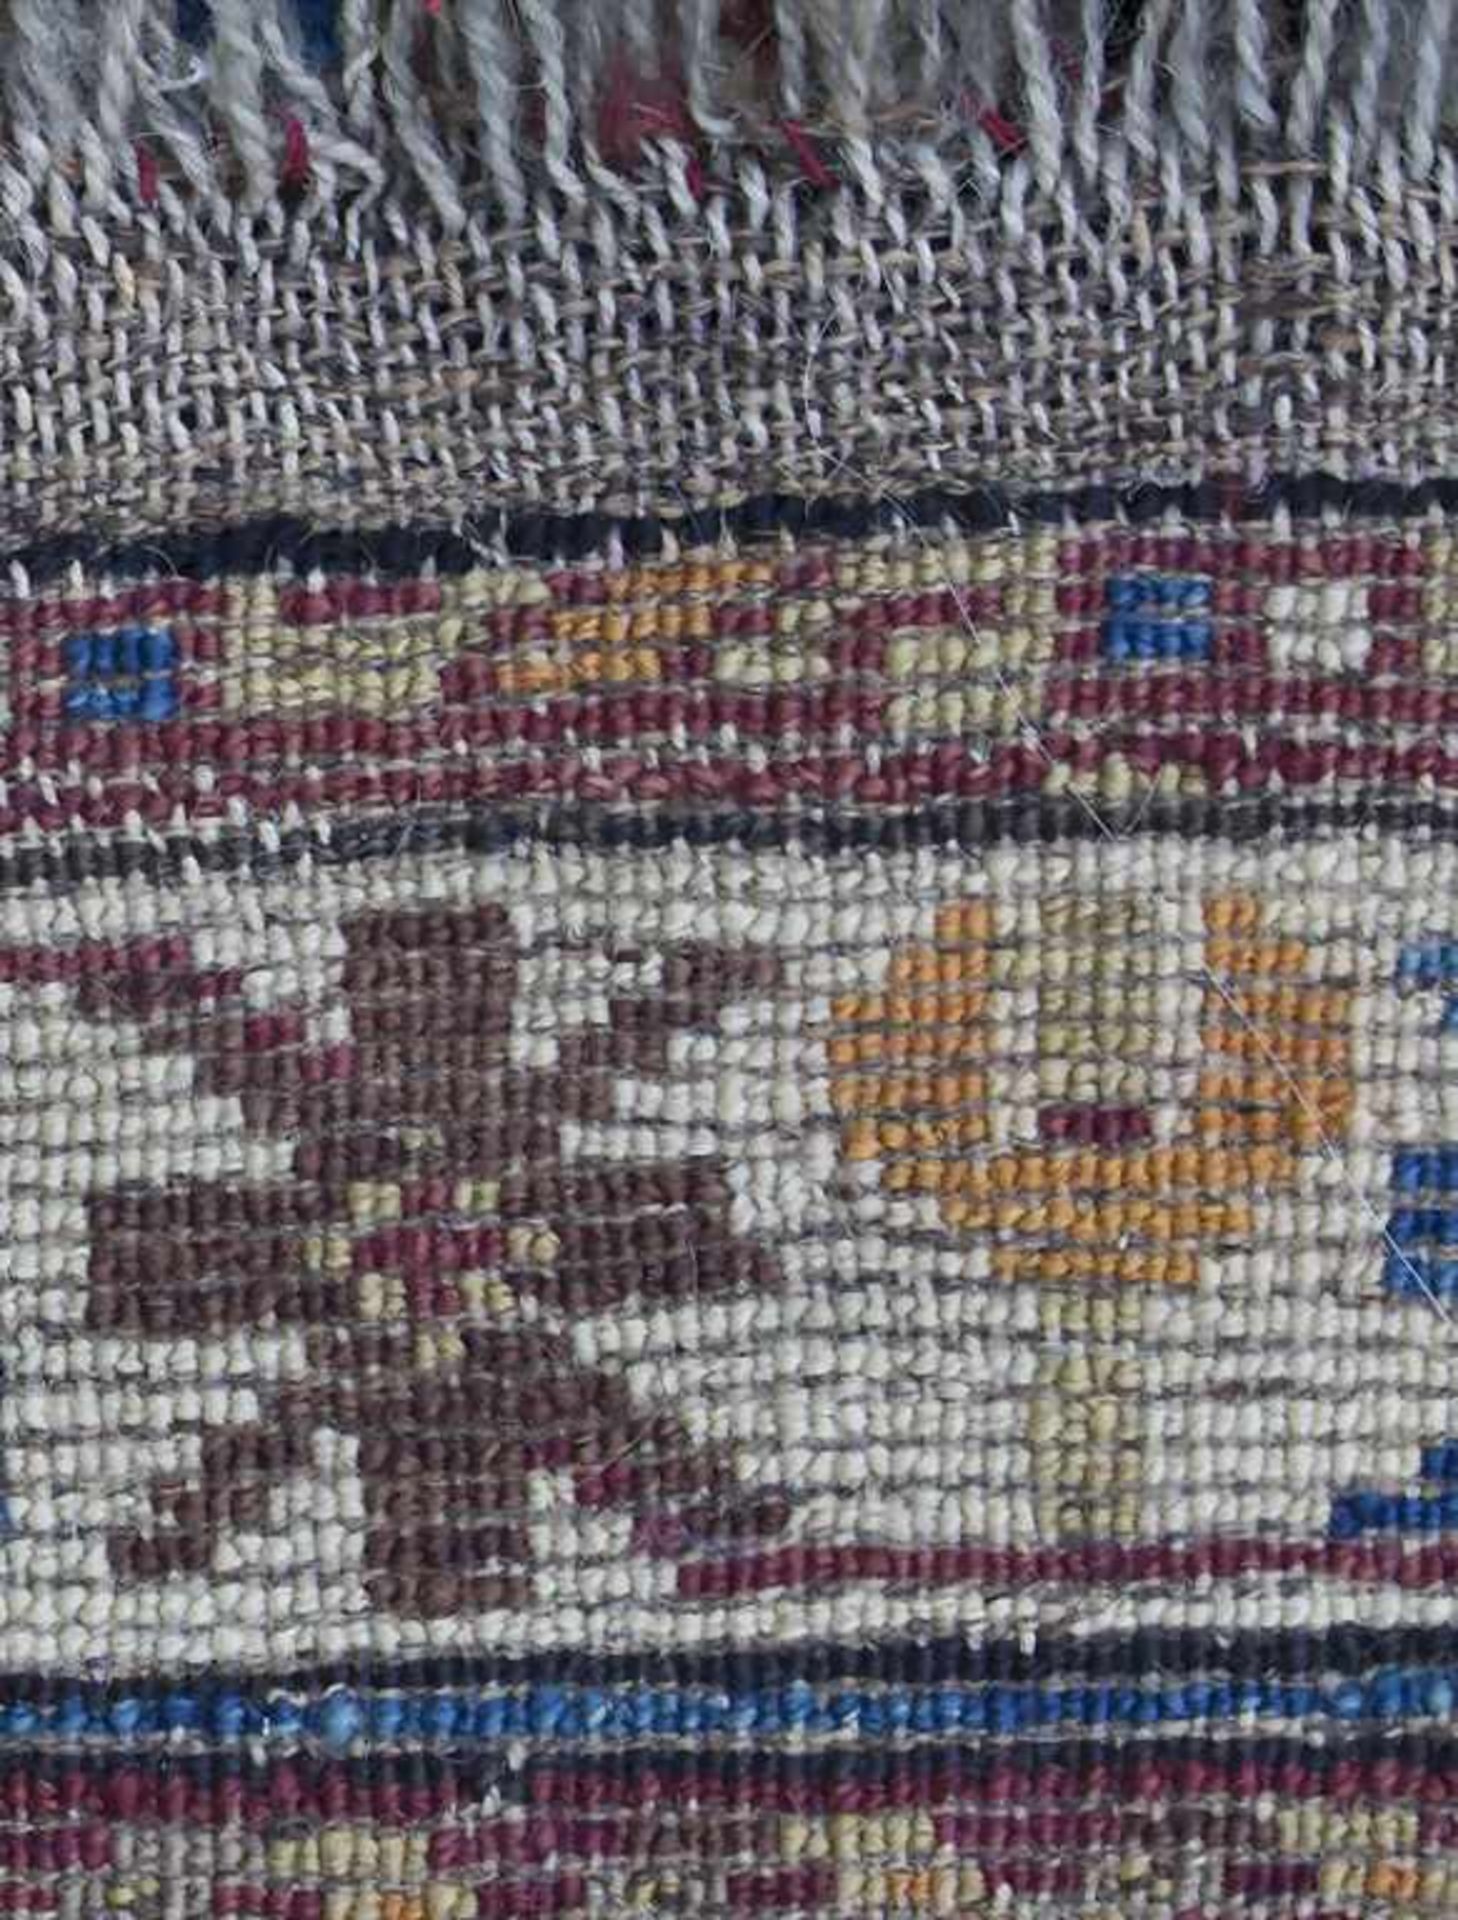 Wandteppich / A wall carpet, KaukasusMaterial: Wolle auf Wolle, Maße: 168 x 106 cm, Zustand: gut, - Bild 5 aus 5